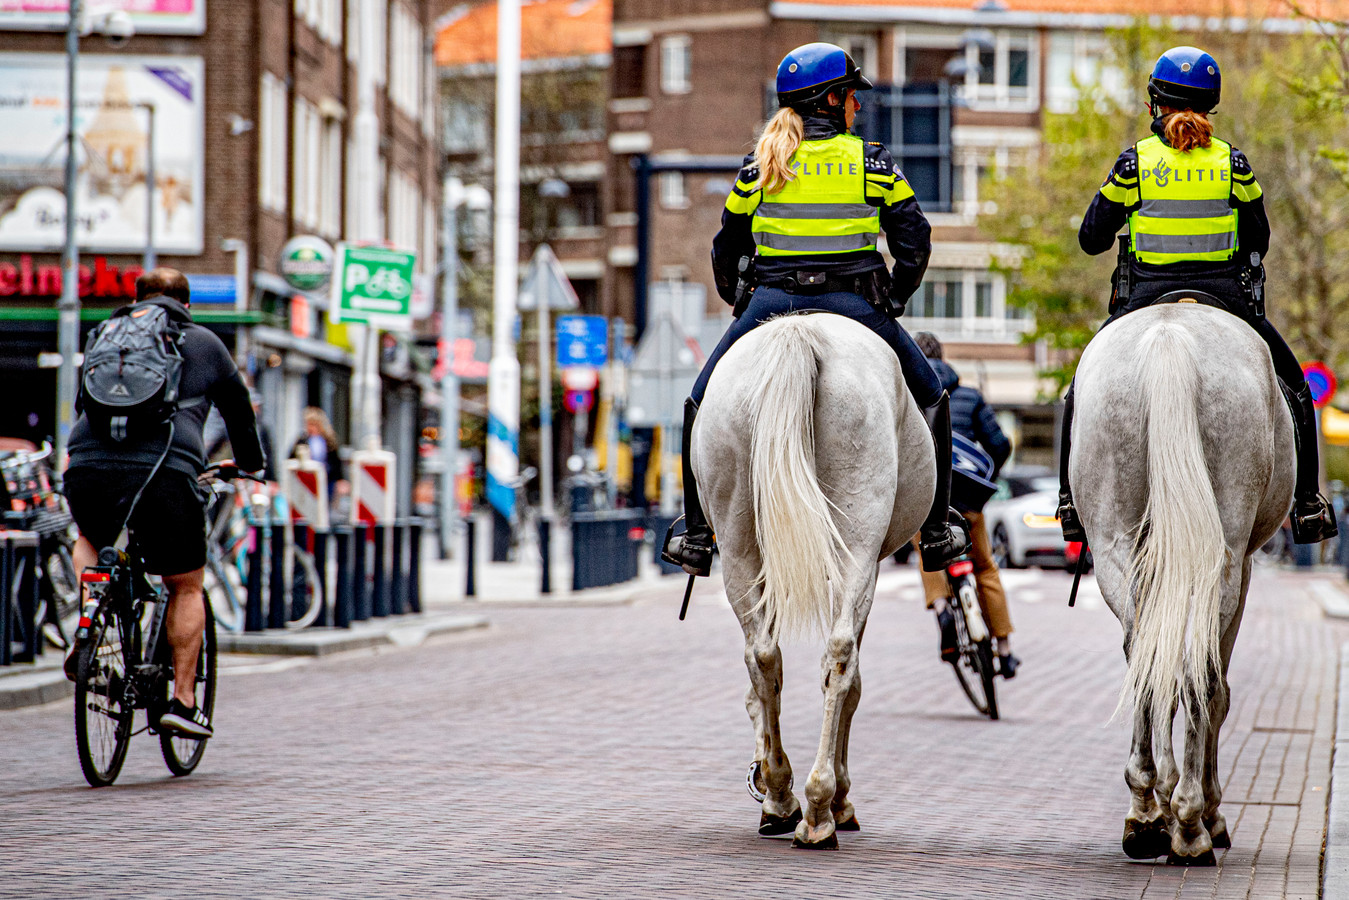 Politie te paard, dat kennen we. Maar een boa te paard? De gemeente Halderberge laat handhavers vanaf vrijdag gebruik maken van een 'dienstpaard'.